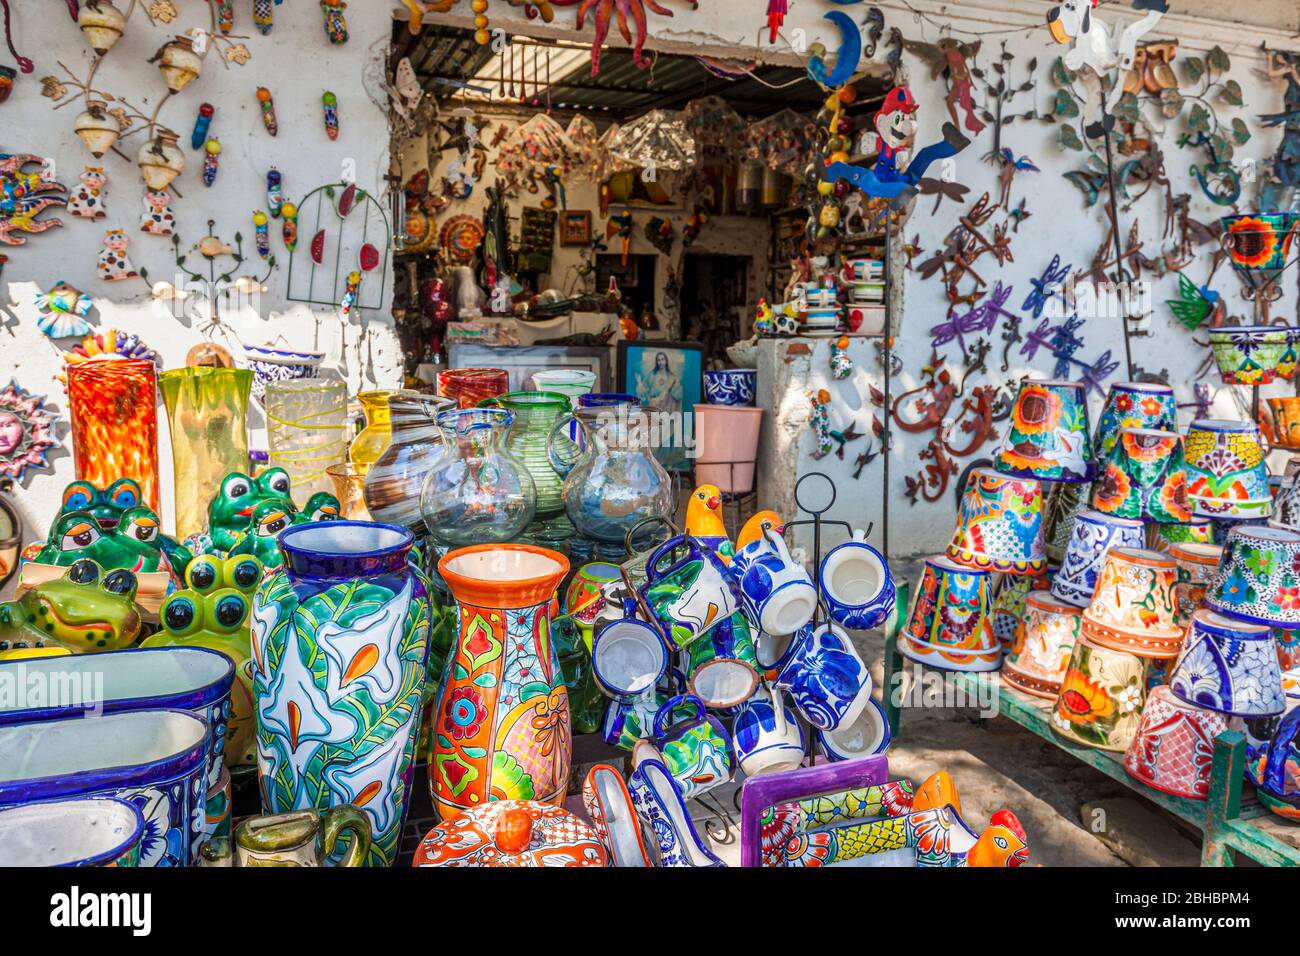 Les couleurs et les formes abondent dans cette boutique d'artisanat d'un marché de Tequisquiapan, au Mexique. Banque D'Images